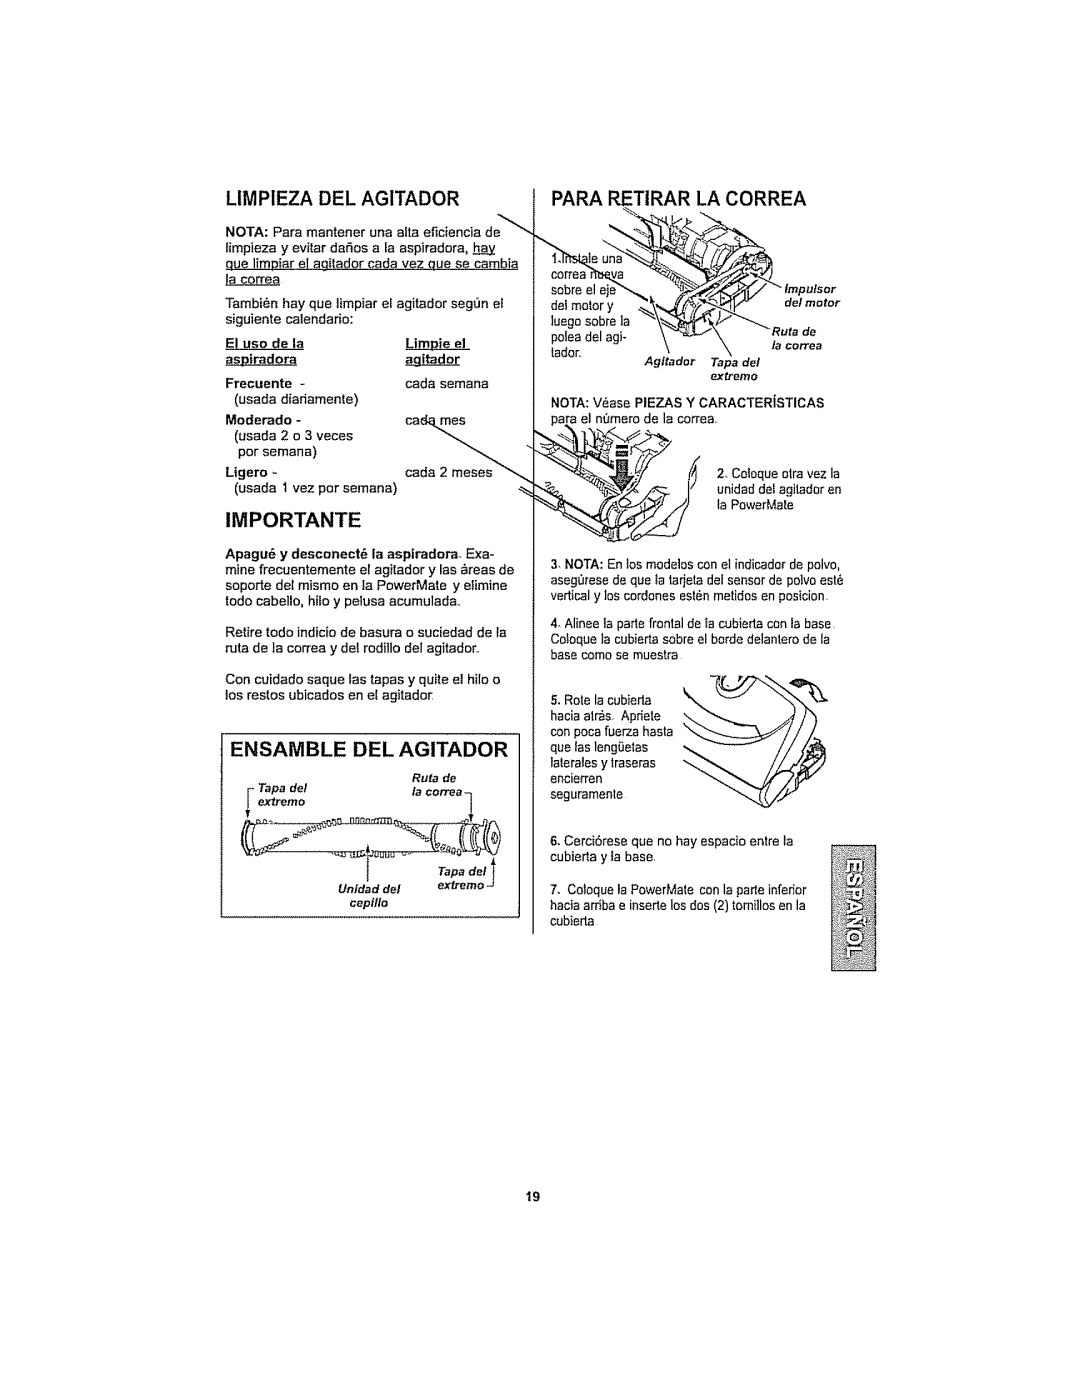 Kenmore 116.29914 manual Limpieza Del Agitador, Para Retirar La Correa, Importante, Ensamble Del Agitador, Limie, Frecuente 